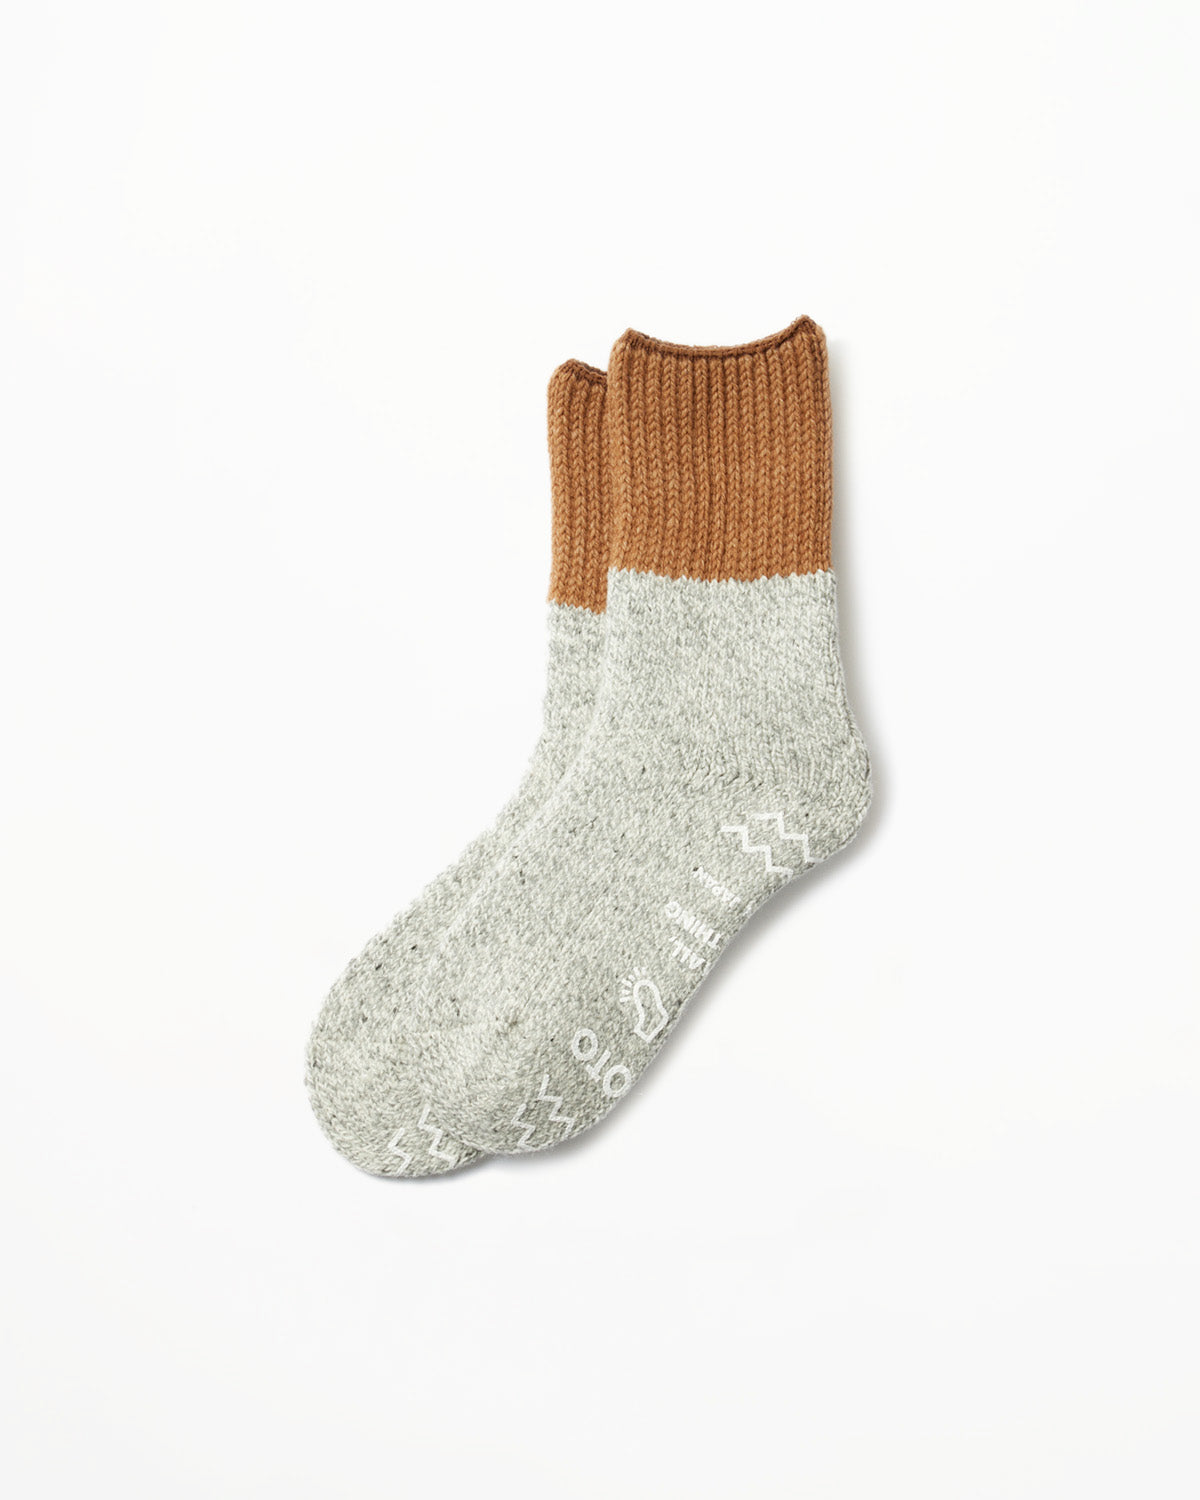 R1435 - Retro Winter Room Socks - Camel, Gray